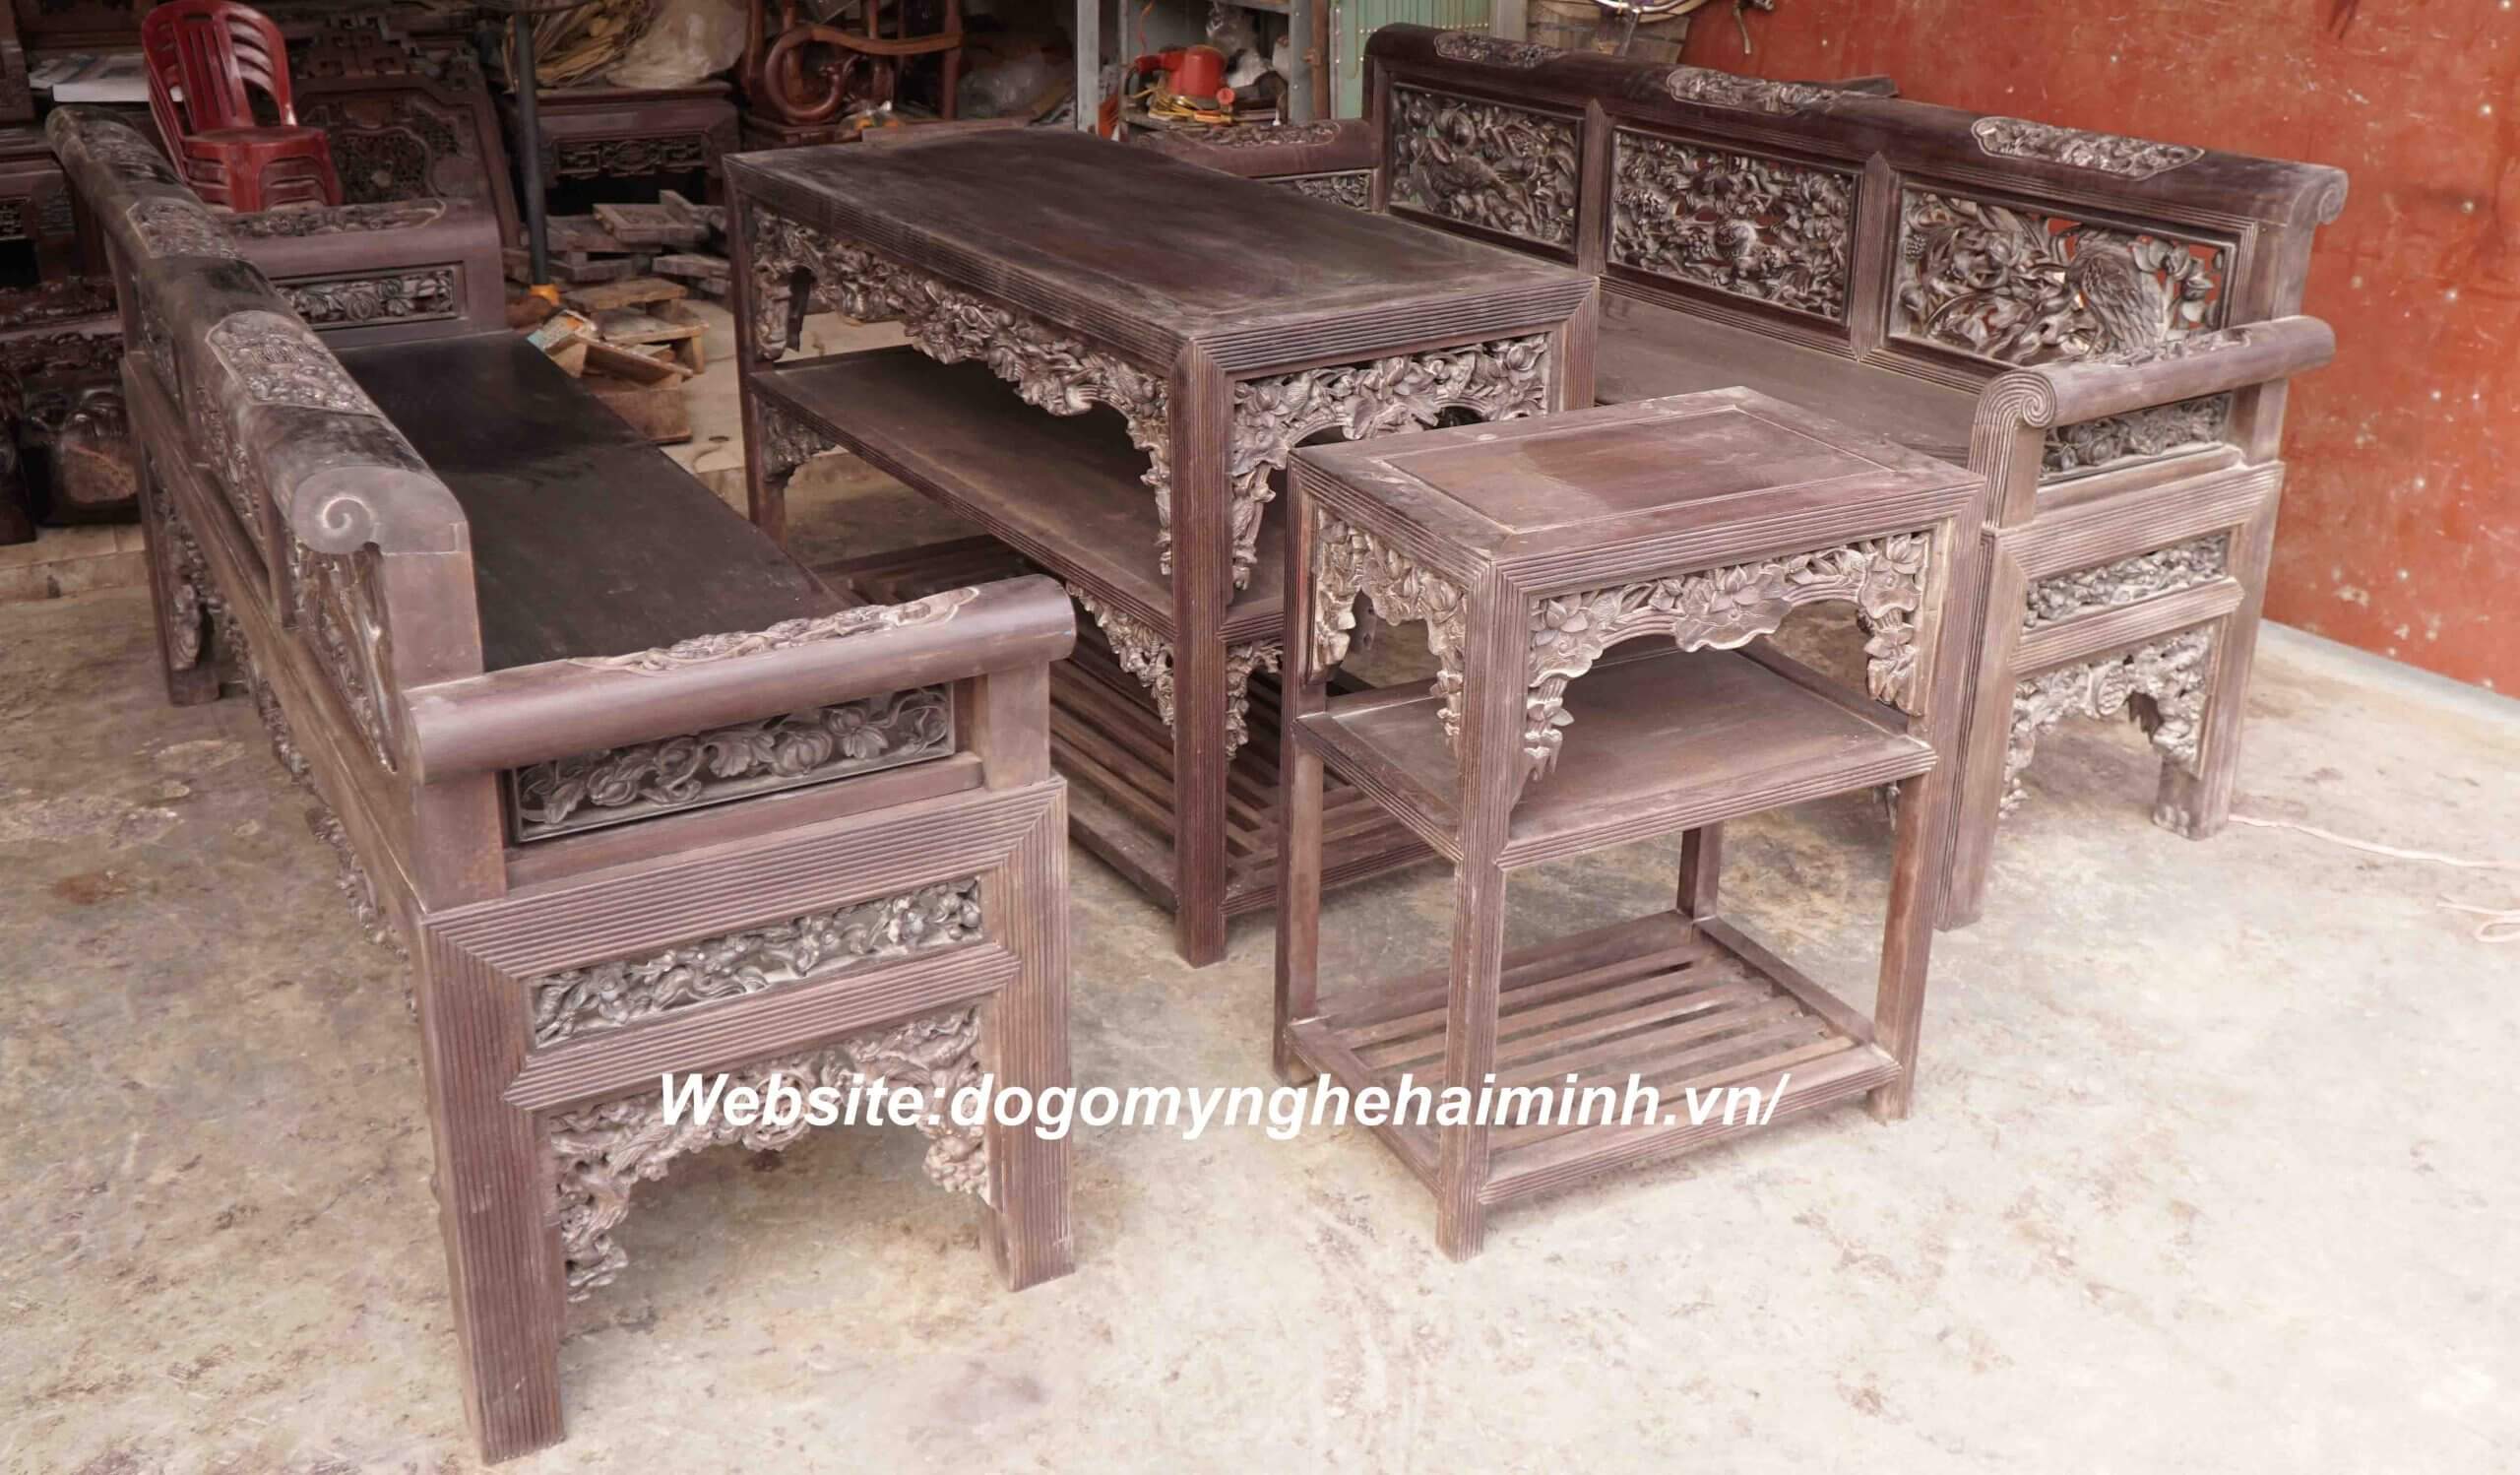 Nơi bán bàn ghế trường kỷ đẹp Hải Minh Nam Định